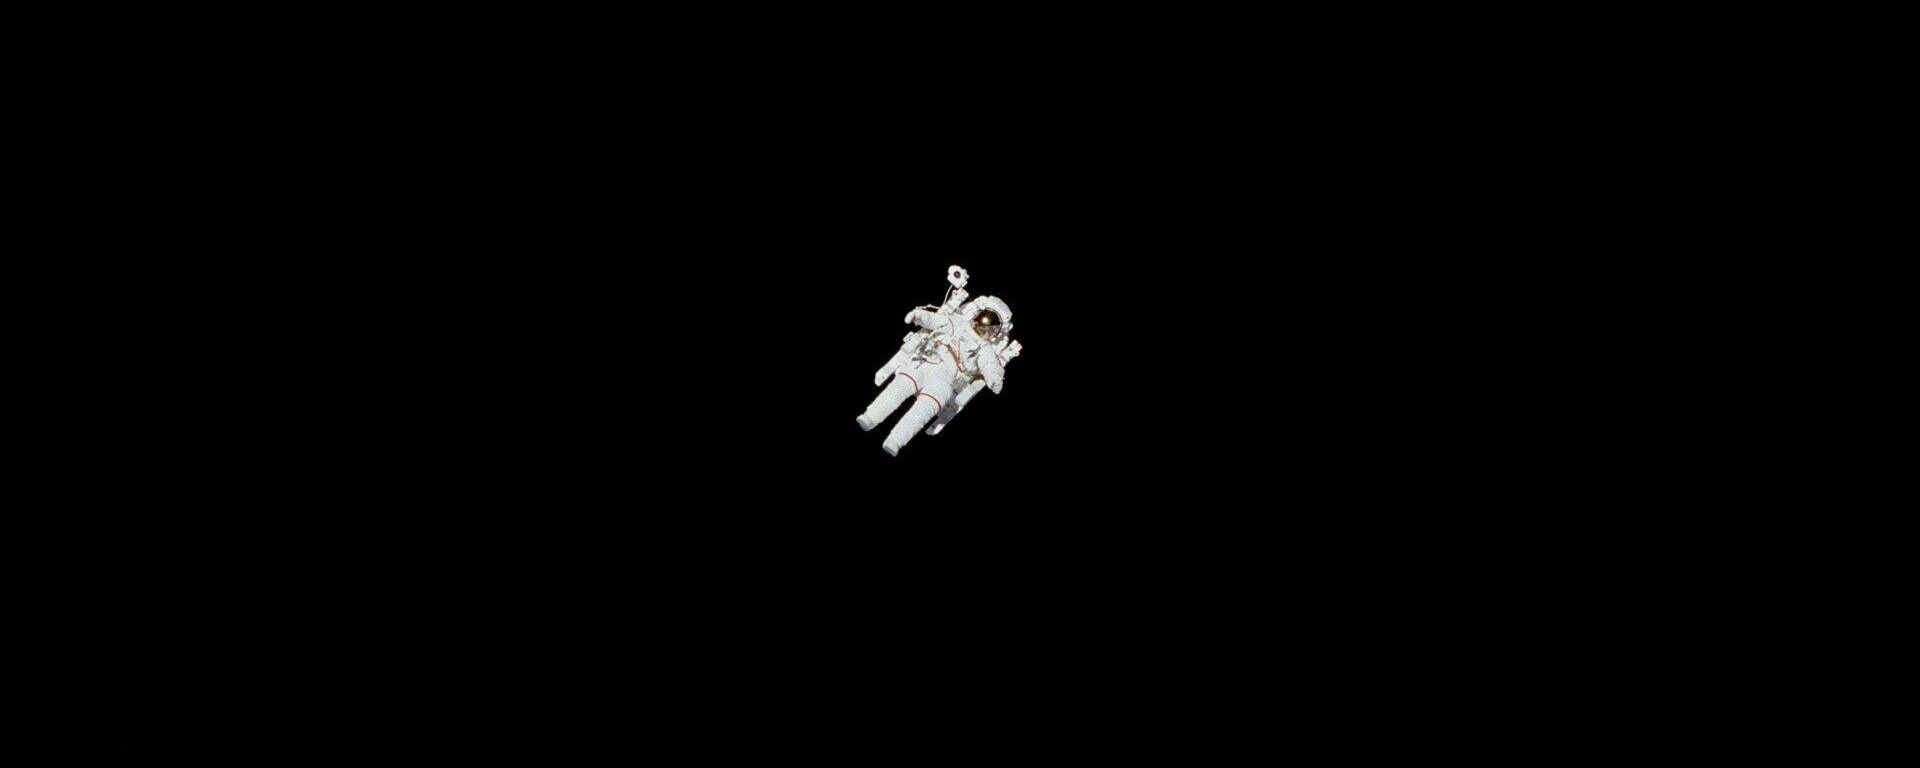 Un astronauta en el Espacio exterior - Sputnik Mundo, 1920, 13.04.2022